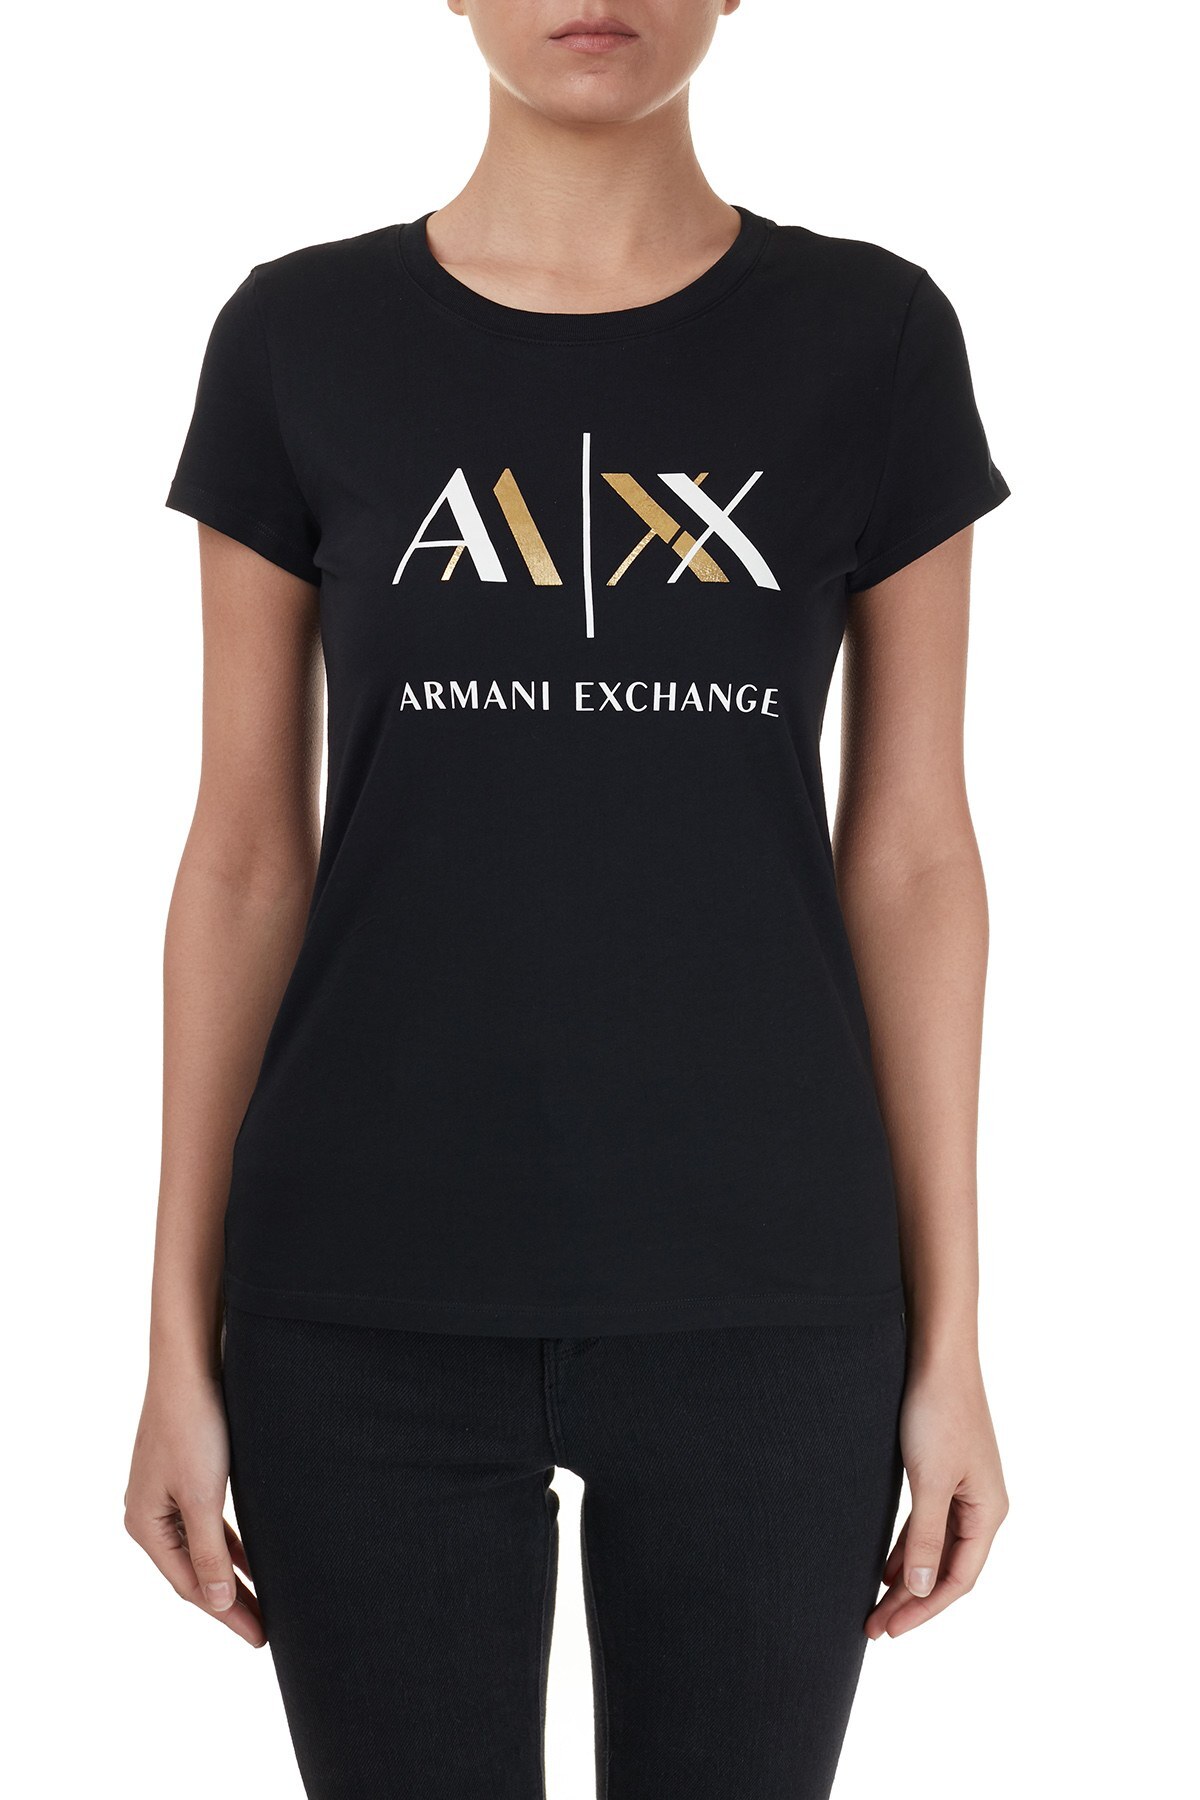 Armani Exchange Baskılı Bisiklet Yaka % 100 Pamuk Bayan T Shirt 6HYTAH YJ73Z 1200 SİYAH